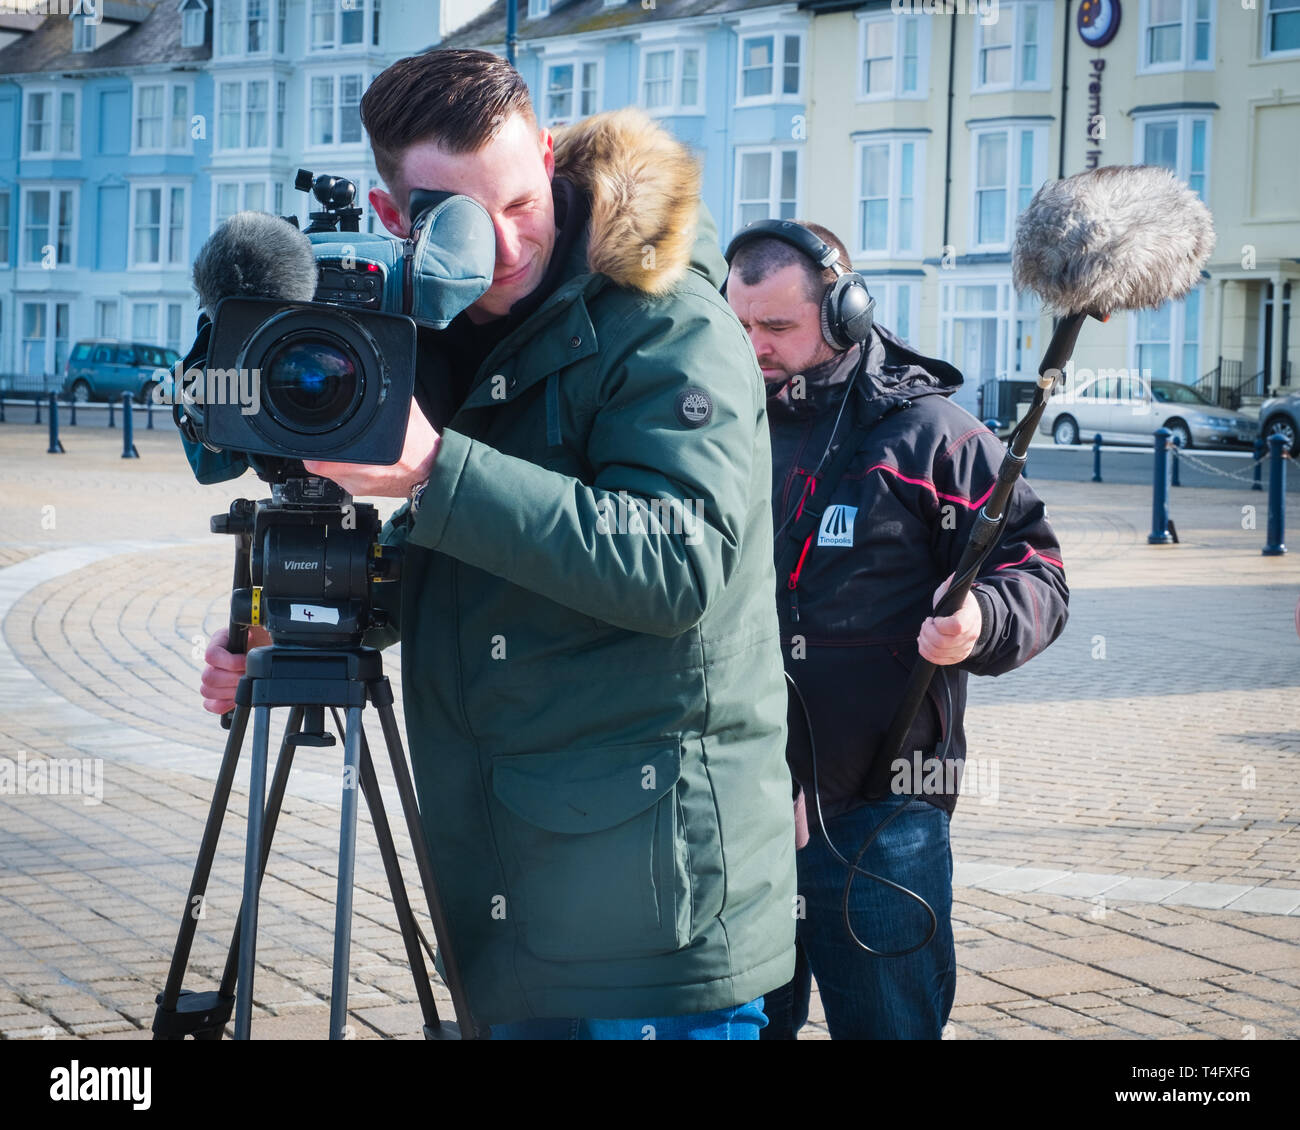 Medien in Großbritannien: ein professionelles Fernsehteam vor Ort Aufnahme ein Element für Broadcast, mit dem video Kameramann sein Objektiv direkt auf das Thema. Großbritannien Stockfoto